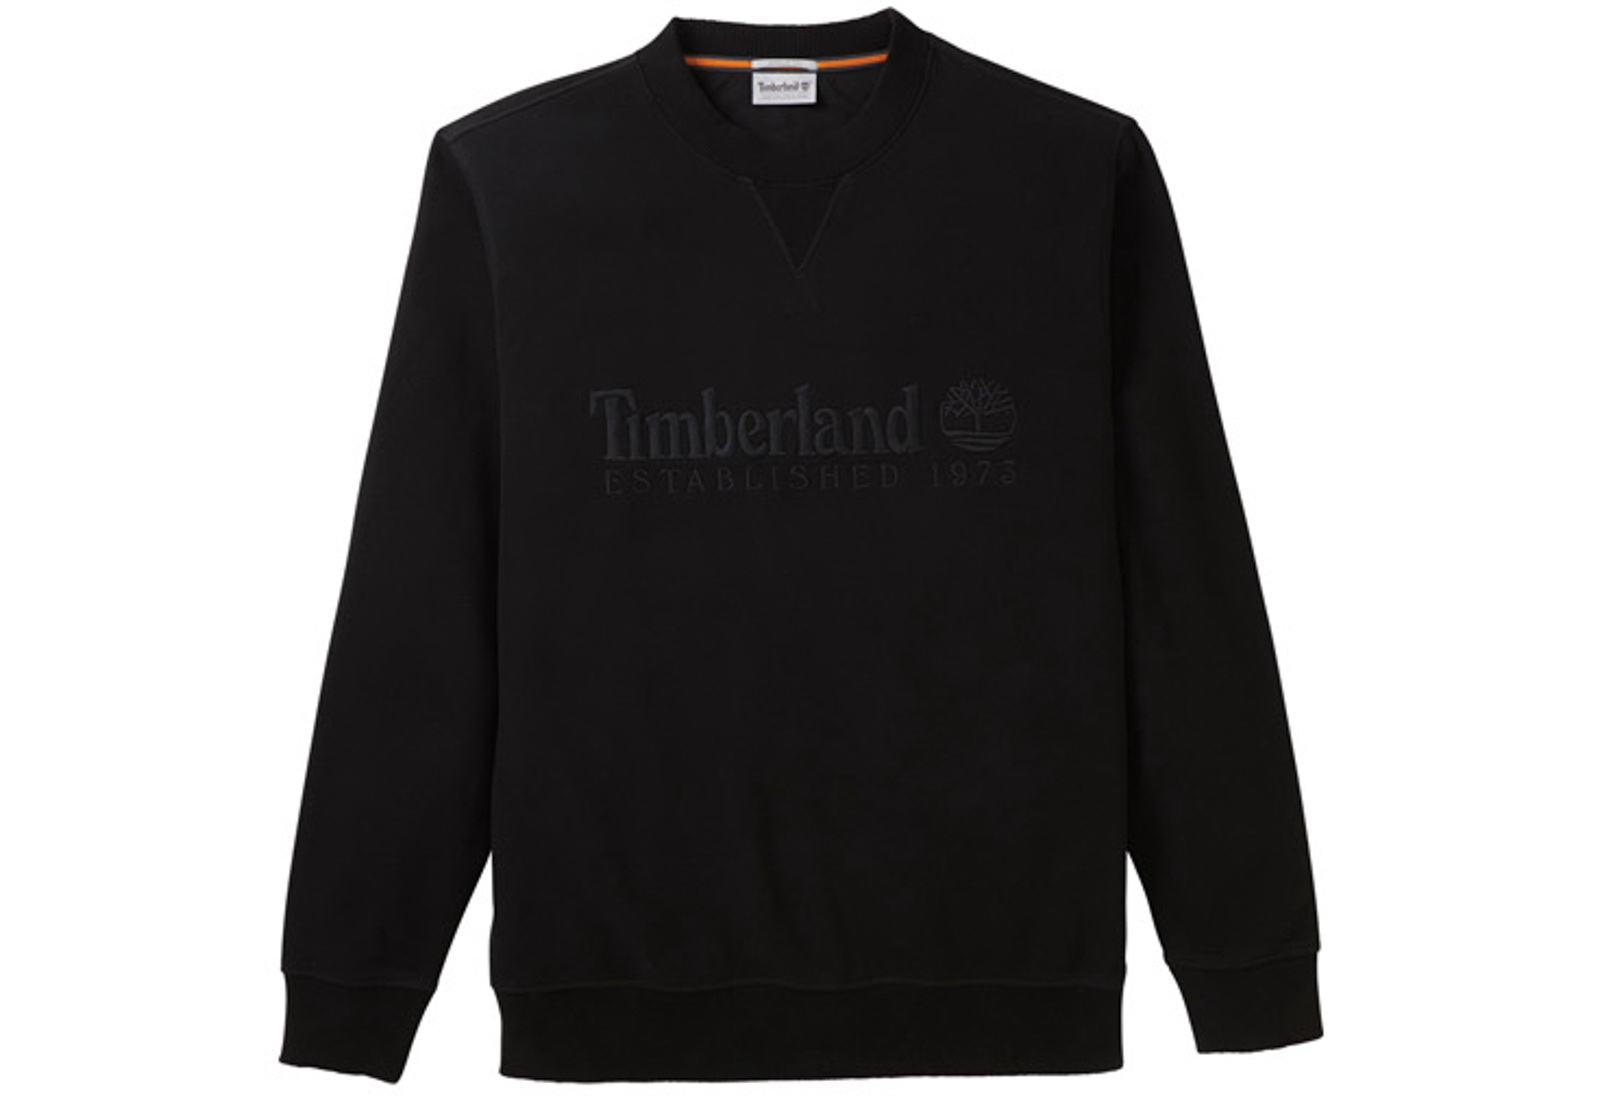 Timberland Îmbrăcăminte Est 1973 Crew Sweatshirt